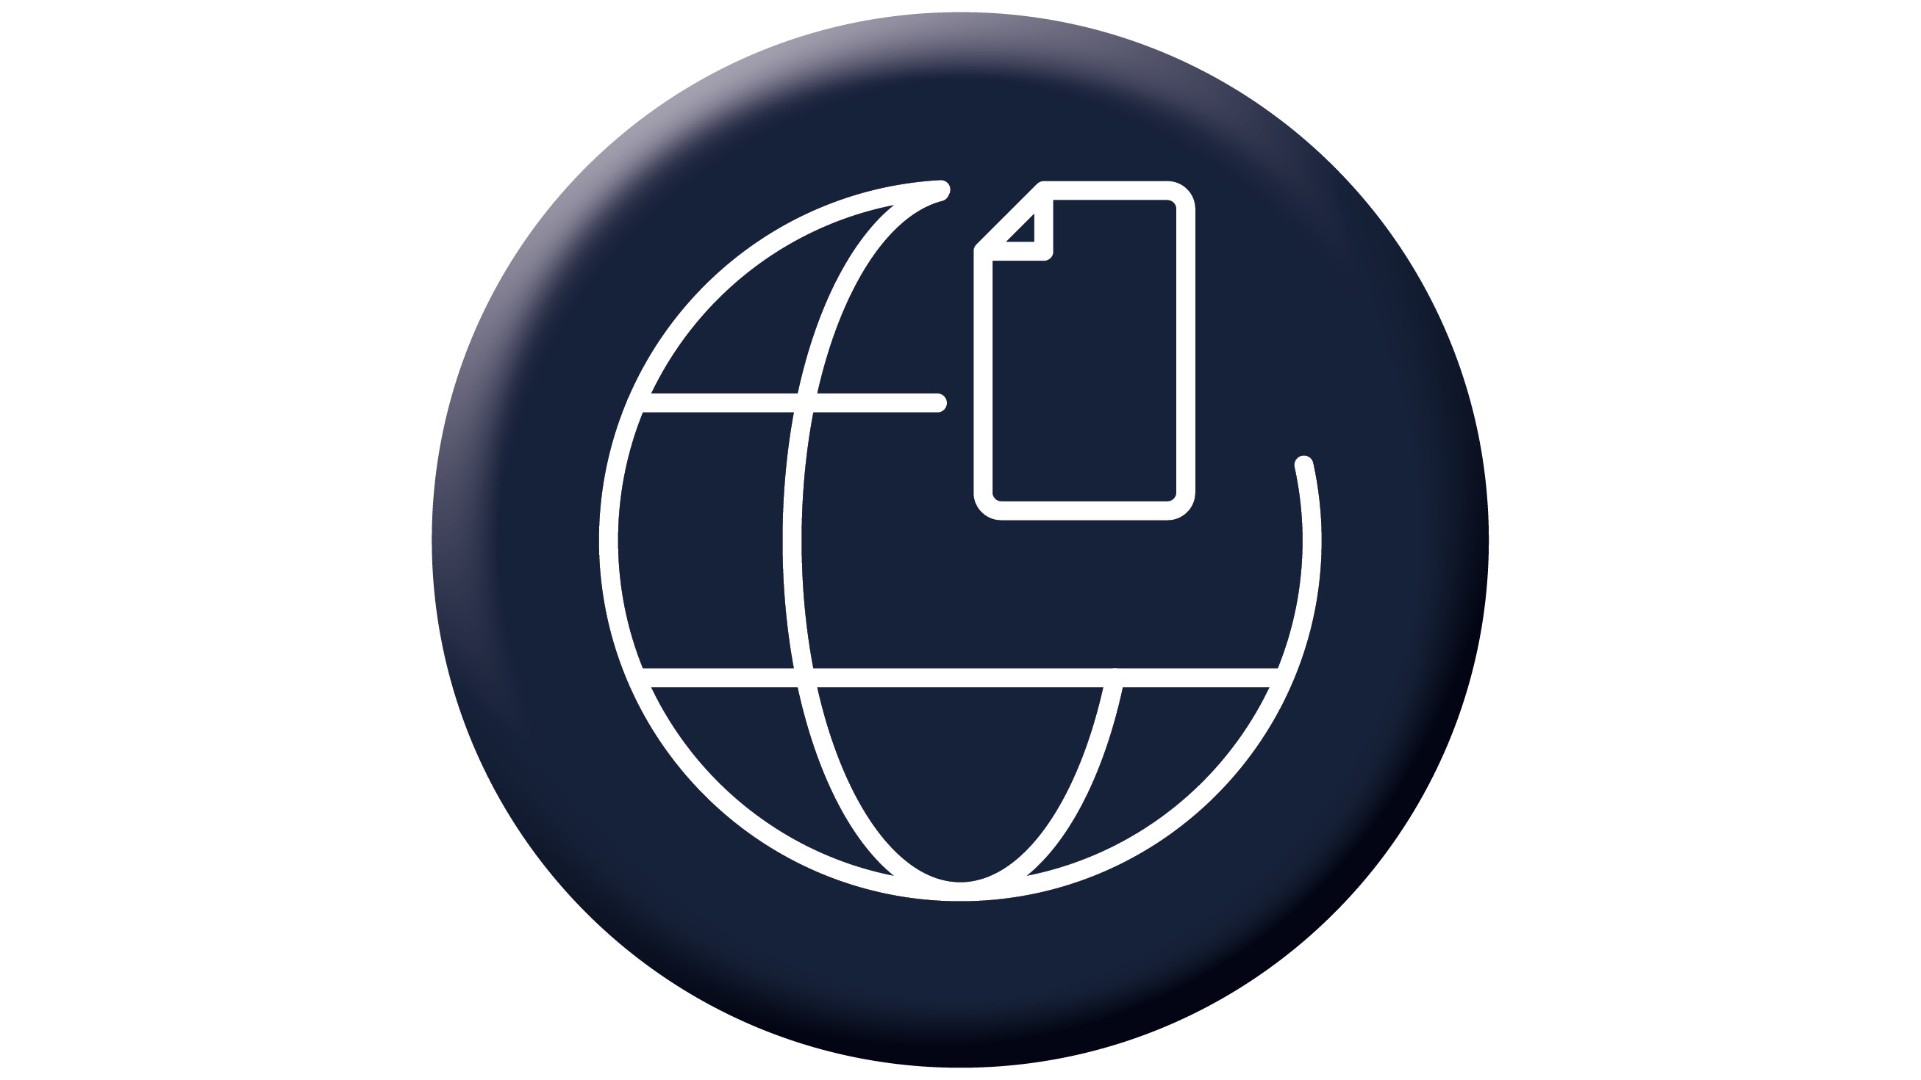 Darstellung grenzüberschreitendem Rechnungsaustausch durch ein Icon mit Weltkugel und einem Rechnungssymbol